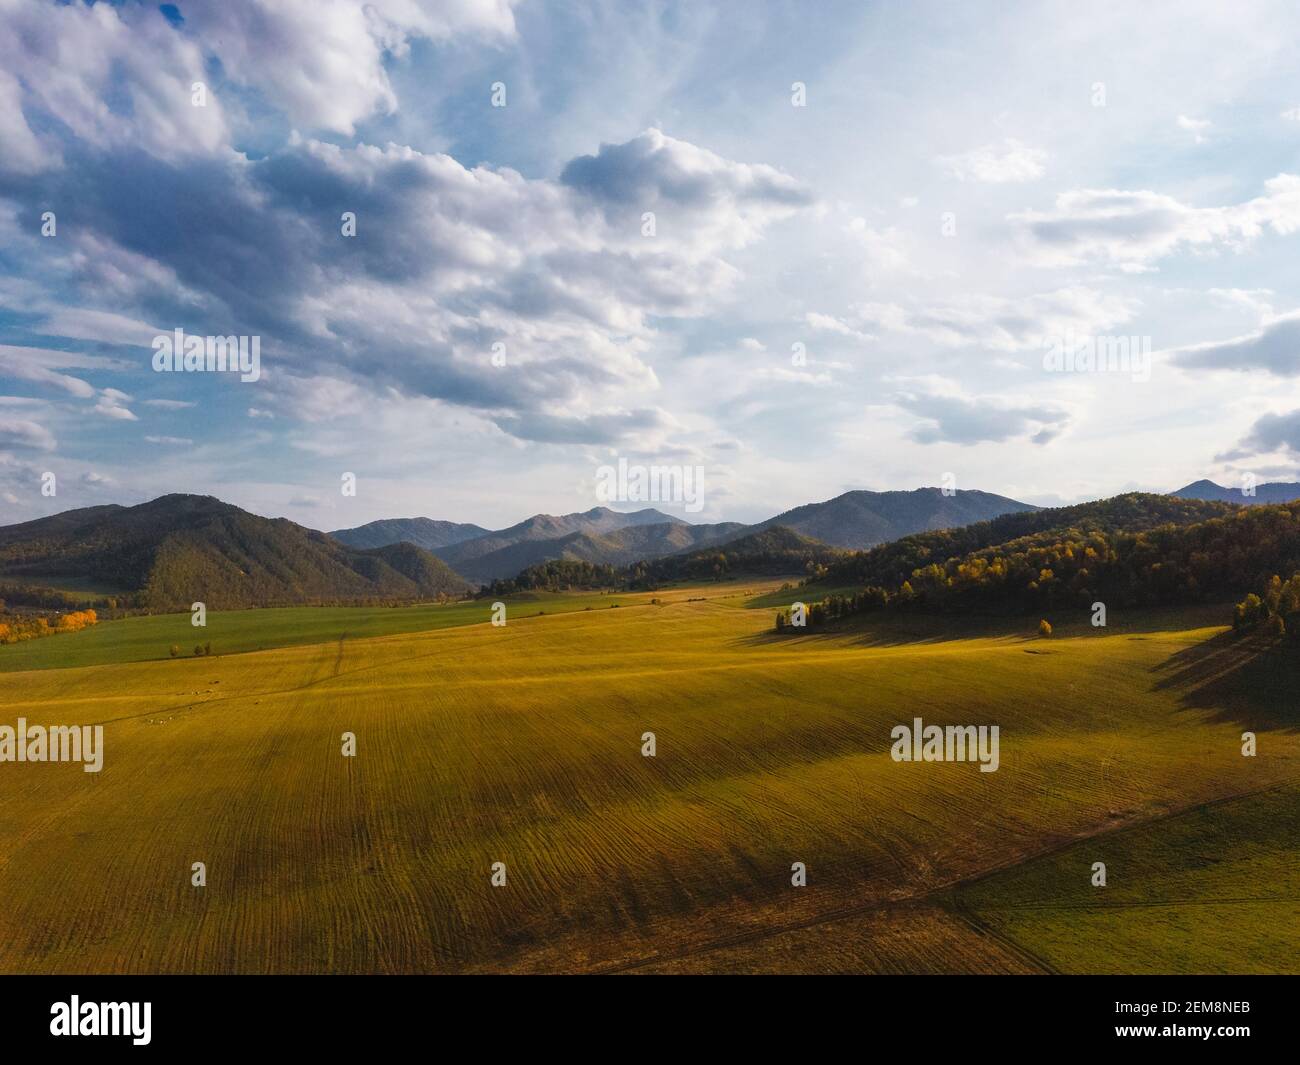 Vue aérienne des montagnes pittoresques de l'automne avec des champs de récoltes et de cultures d'hiver. Couleurs d'automne vives, Drone tournage de paysages de l'automne Banque D'Images